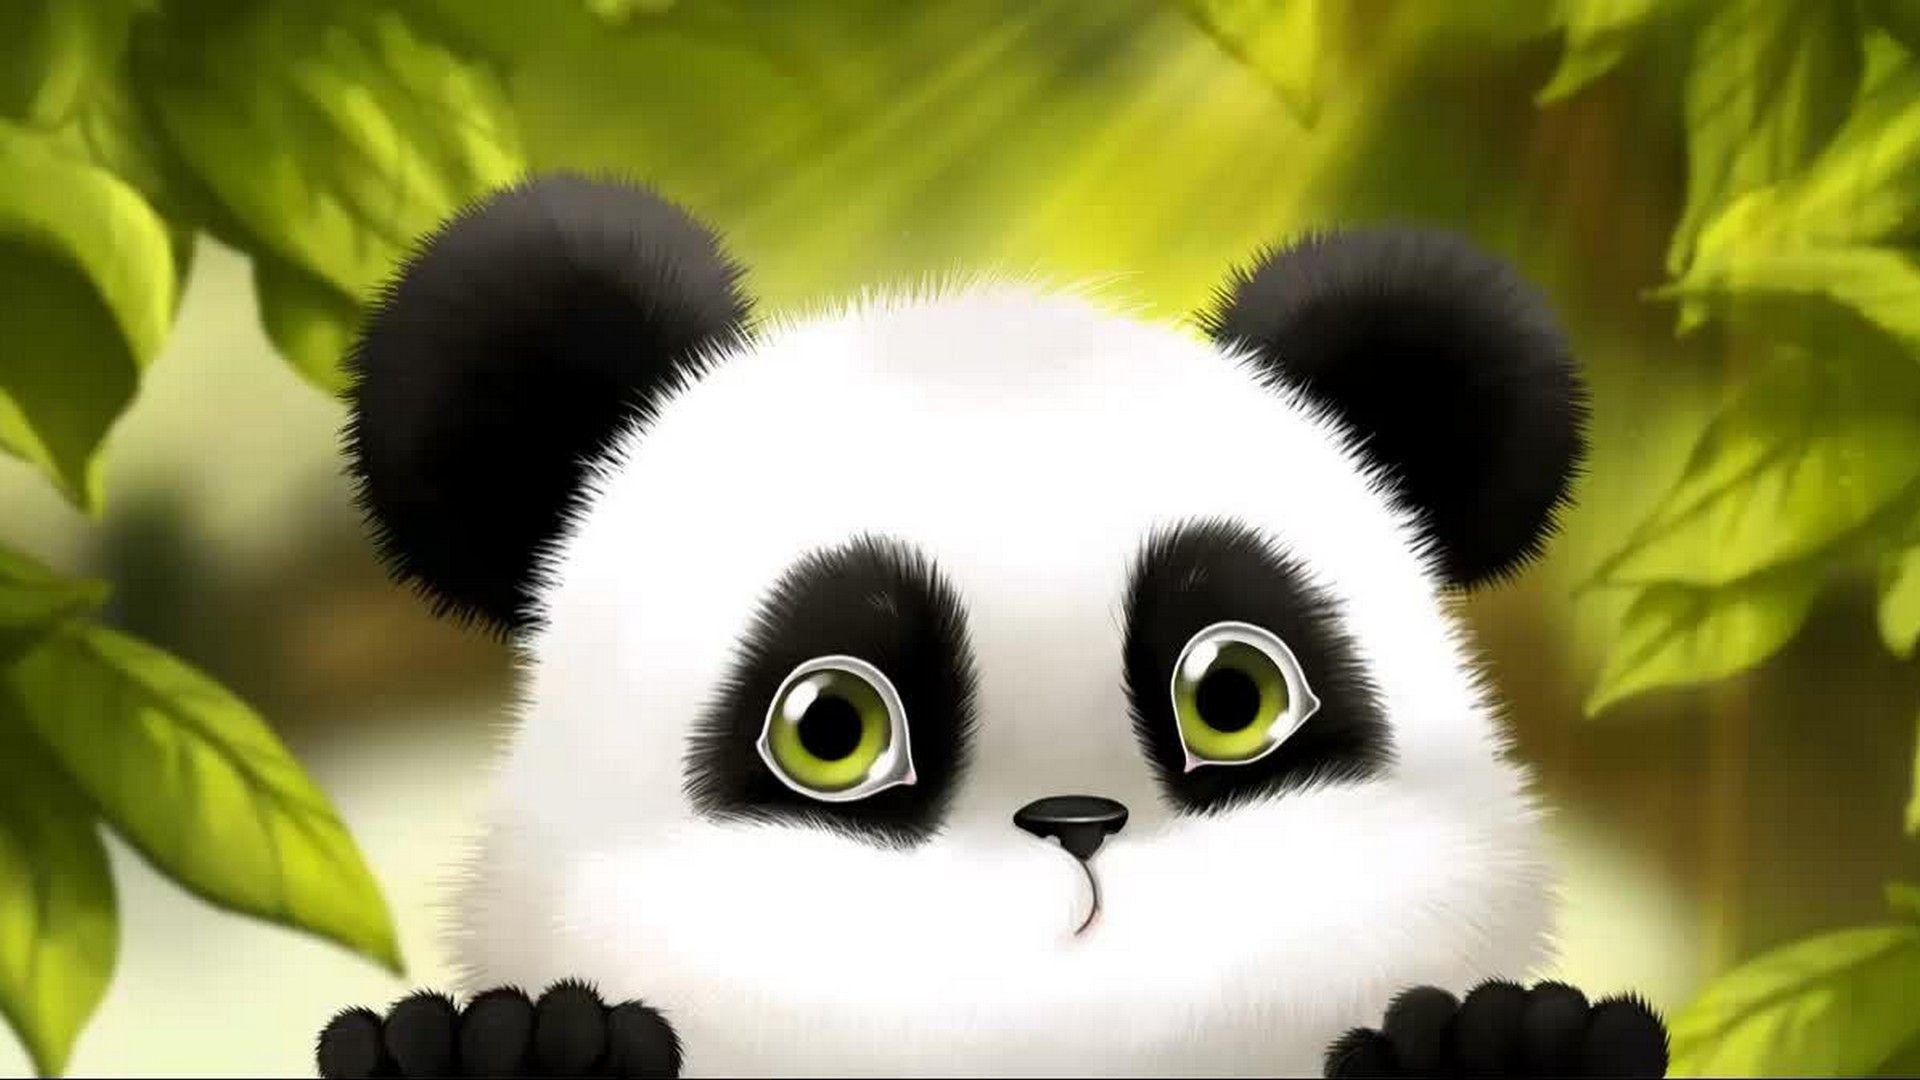 Cute Anime Panda Wallpapers - Top Hình Ảnh Đẹp